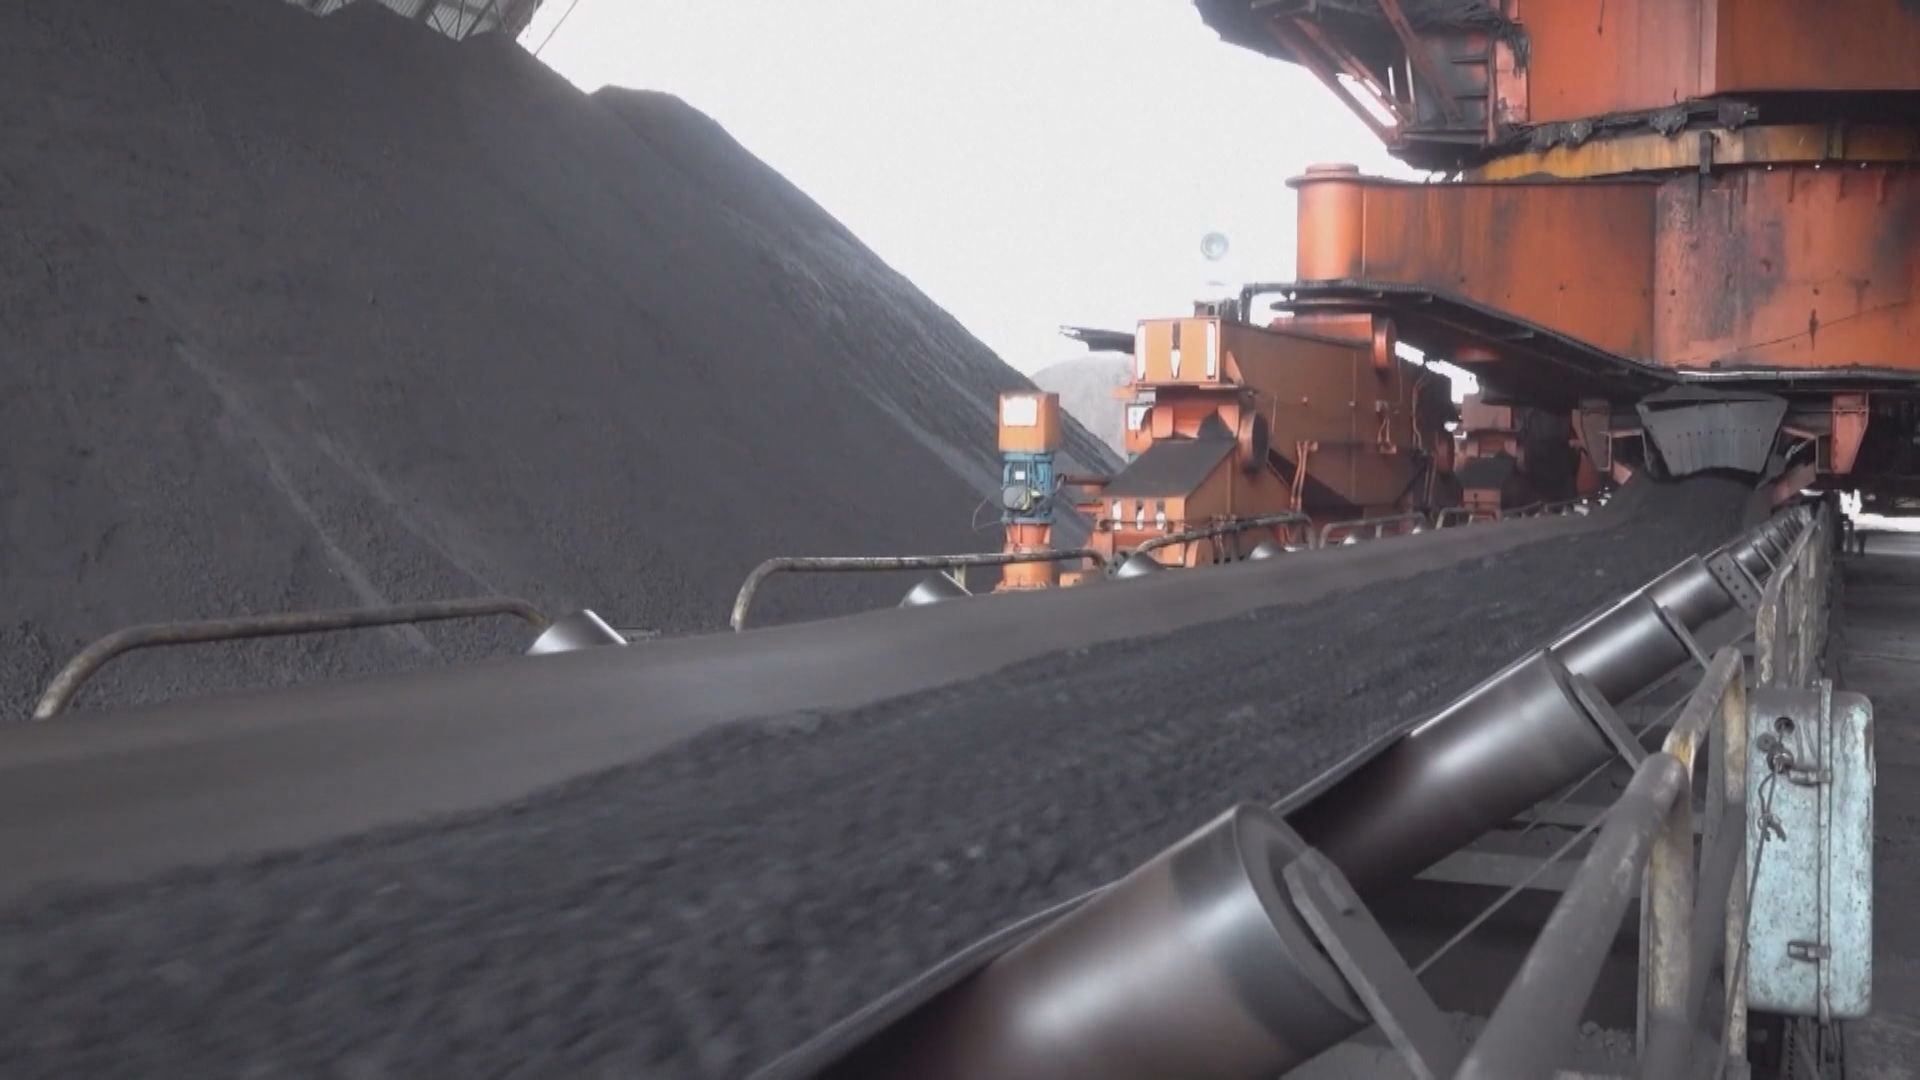 【穩定供應】發改委:2027年初步建立煤礦產能儲備制度